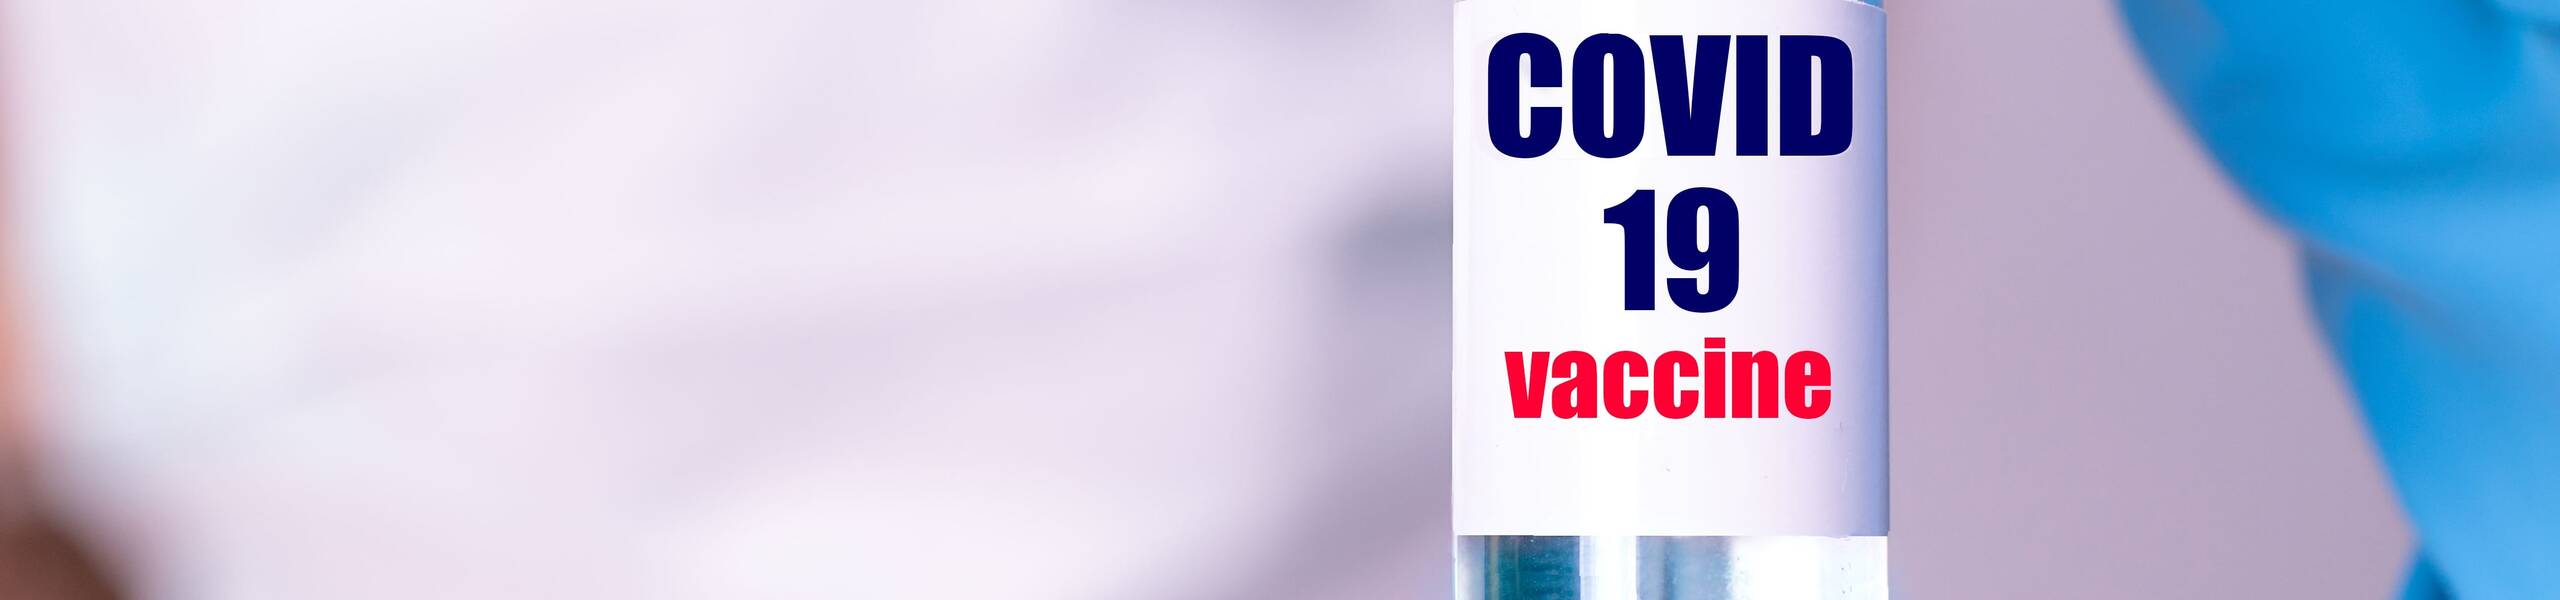 วัคซีน Novavax Covid ล้างขั้นตอนสำคัญกับ FDA